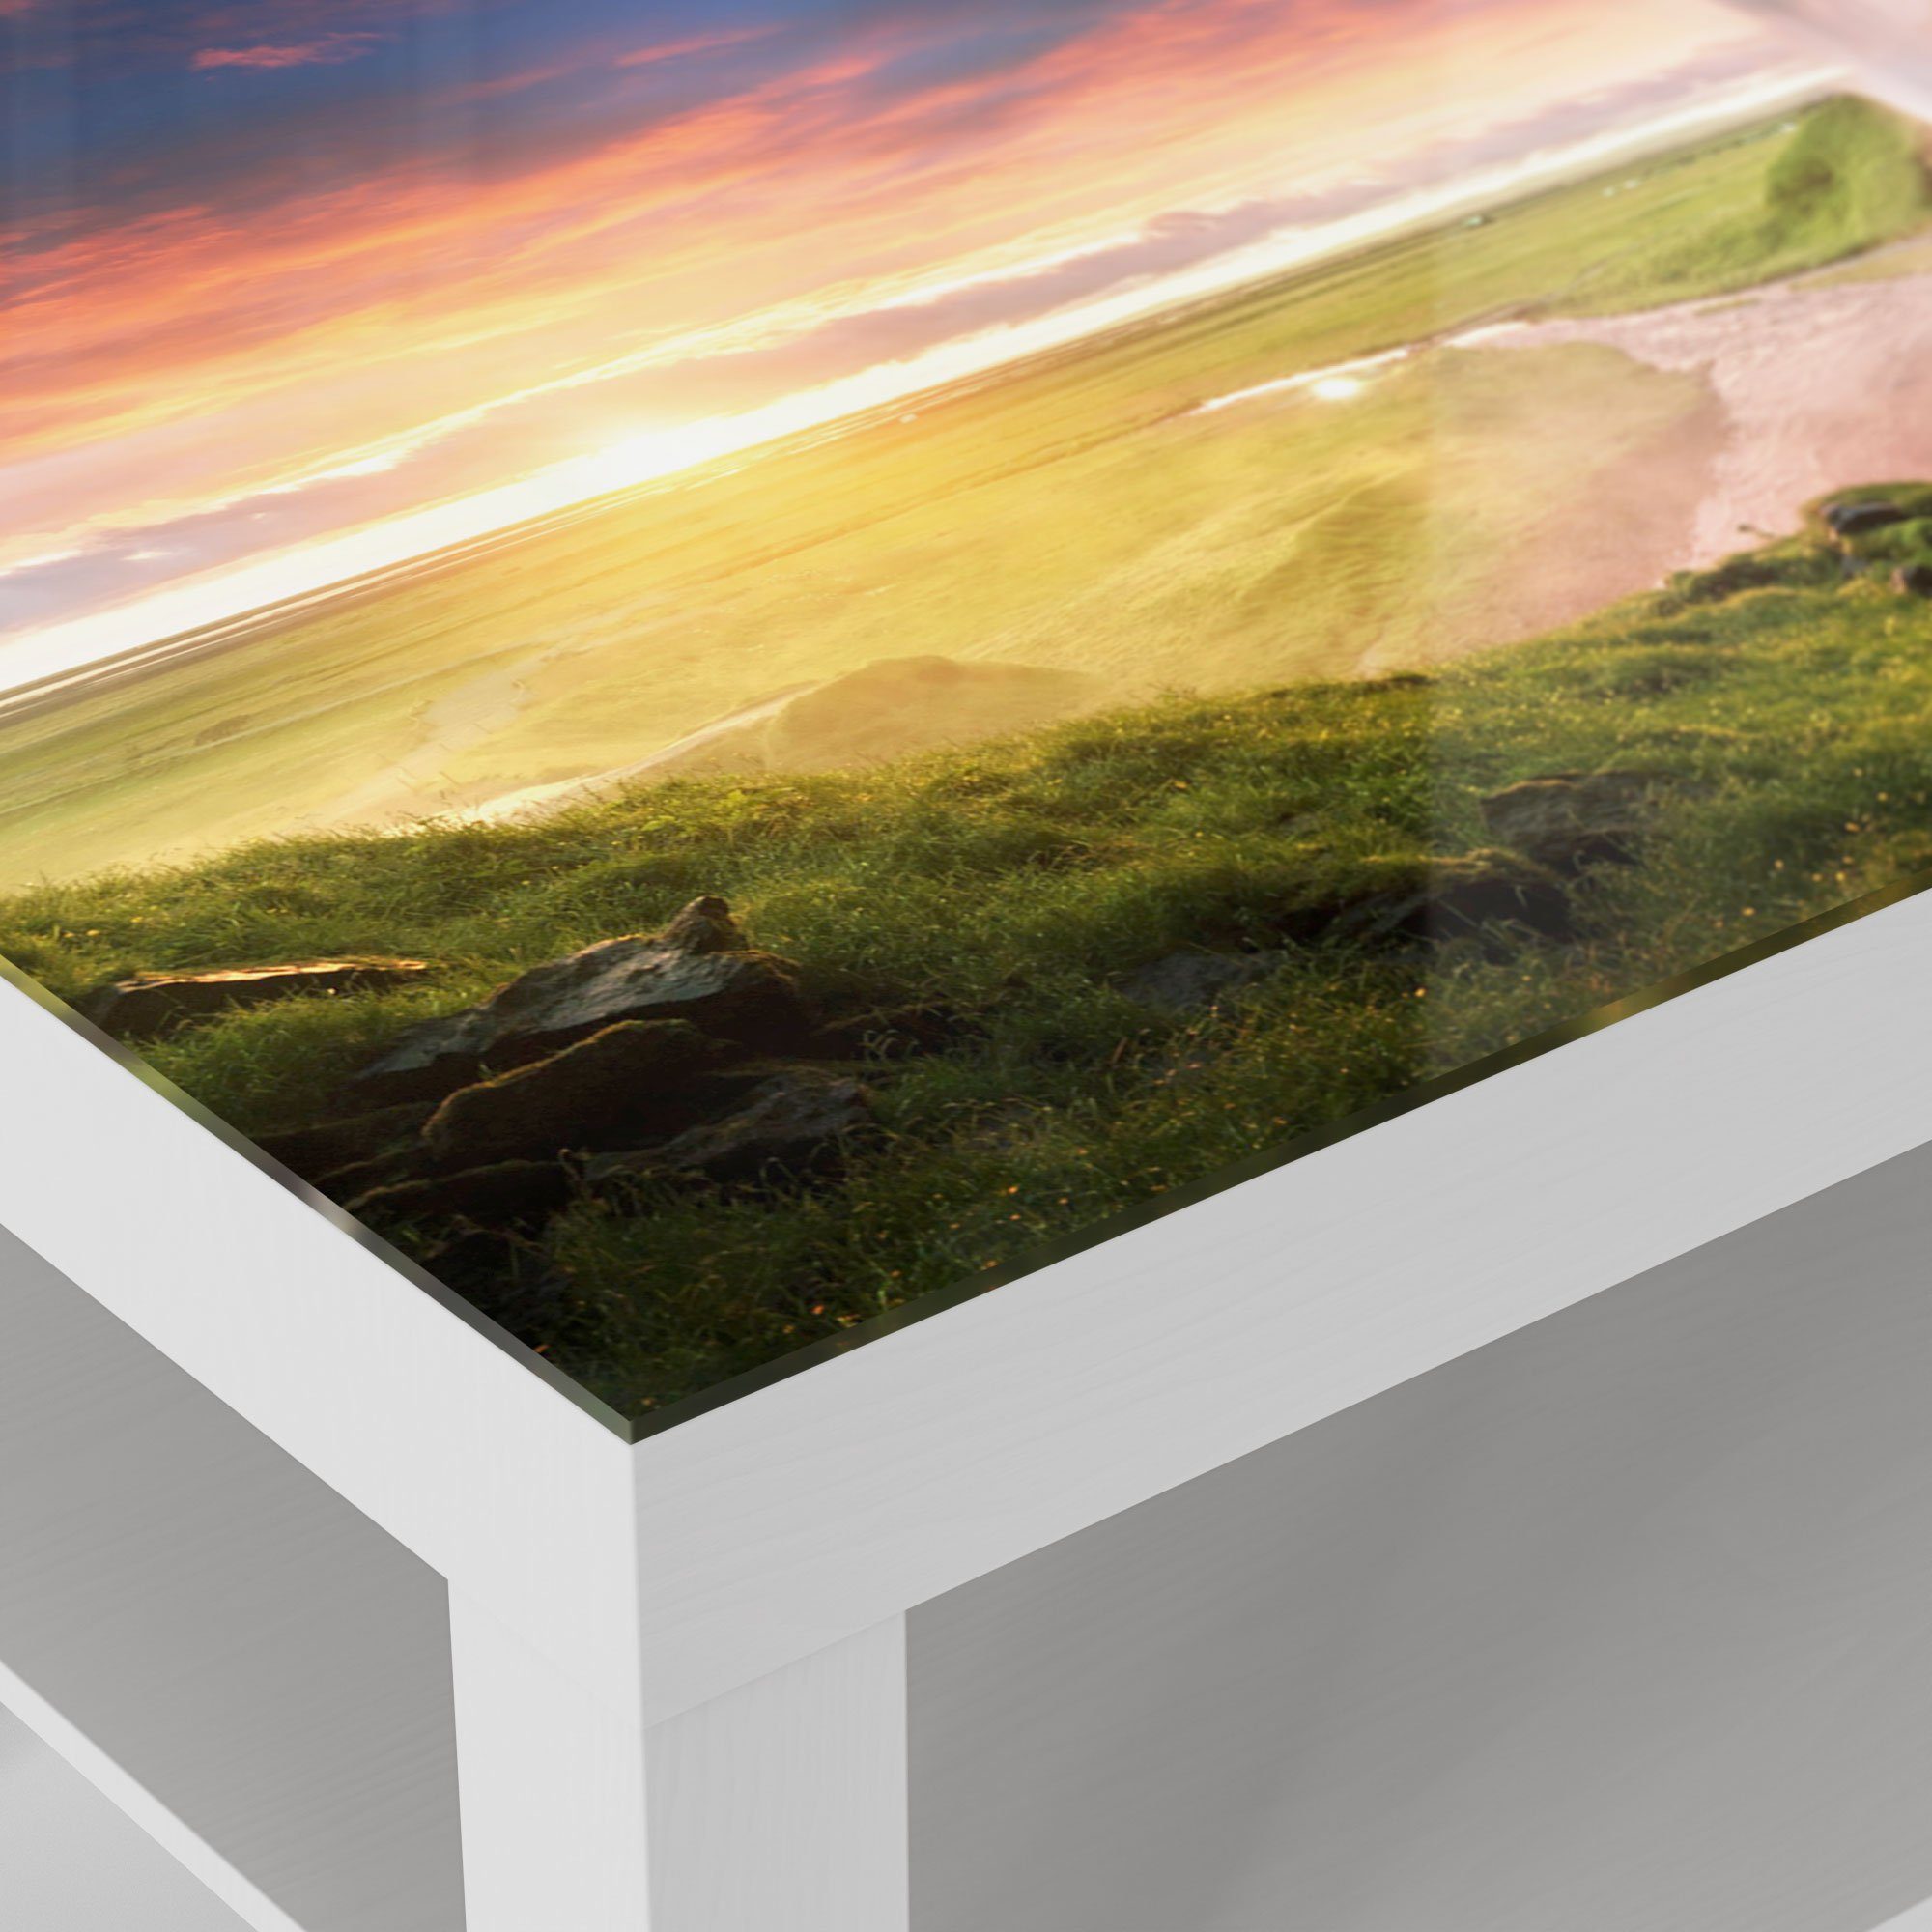 DEQORI Couchtisch 'Seljalandsfoss Wasserfall', modern Beistelltisch Weiß Glas Glastisch